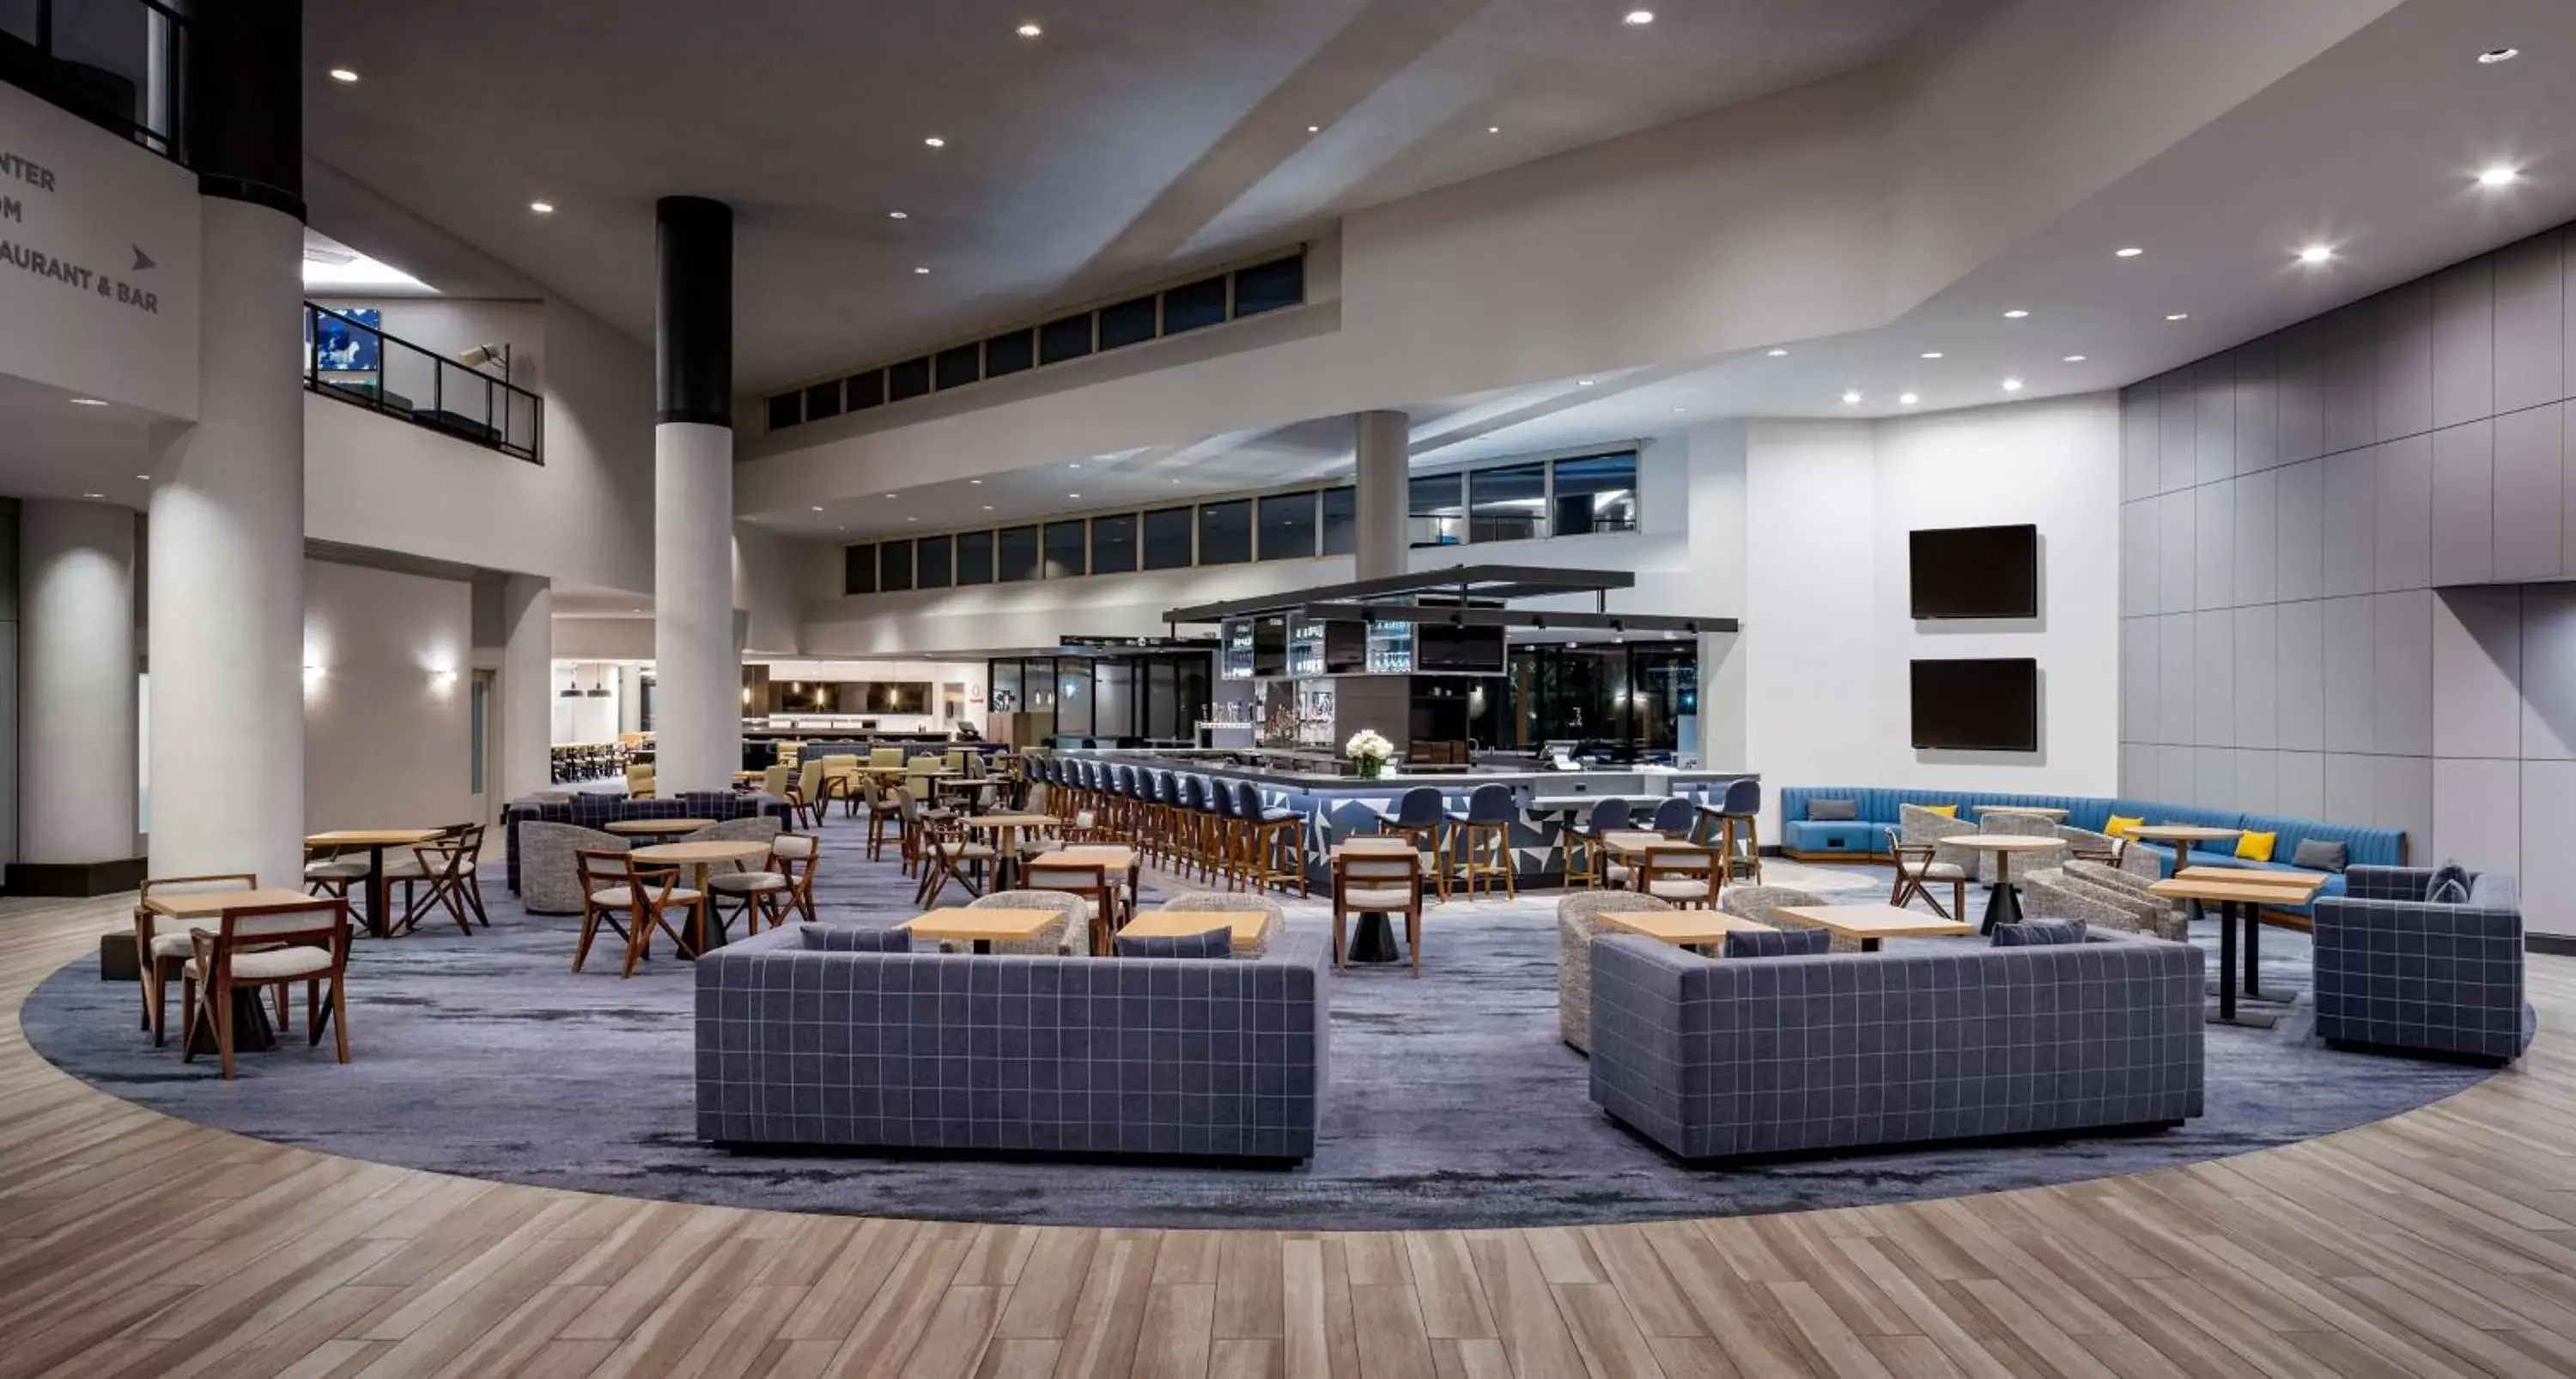 Lobby or reception, Restaurant/Places to Eat in Hyatt Regency Santa Clara